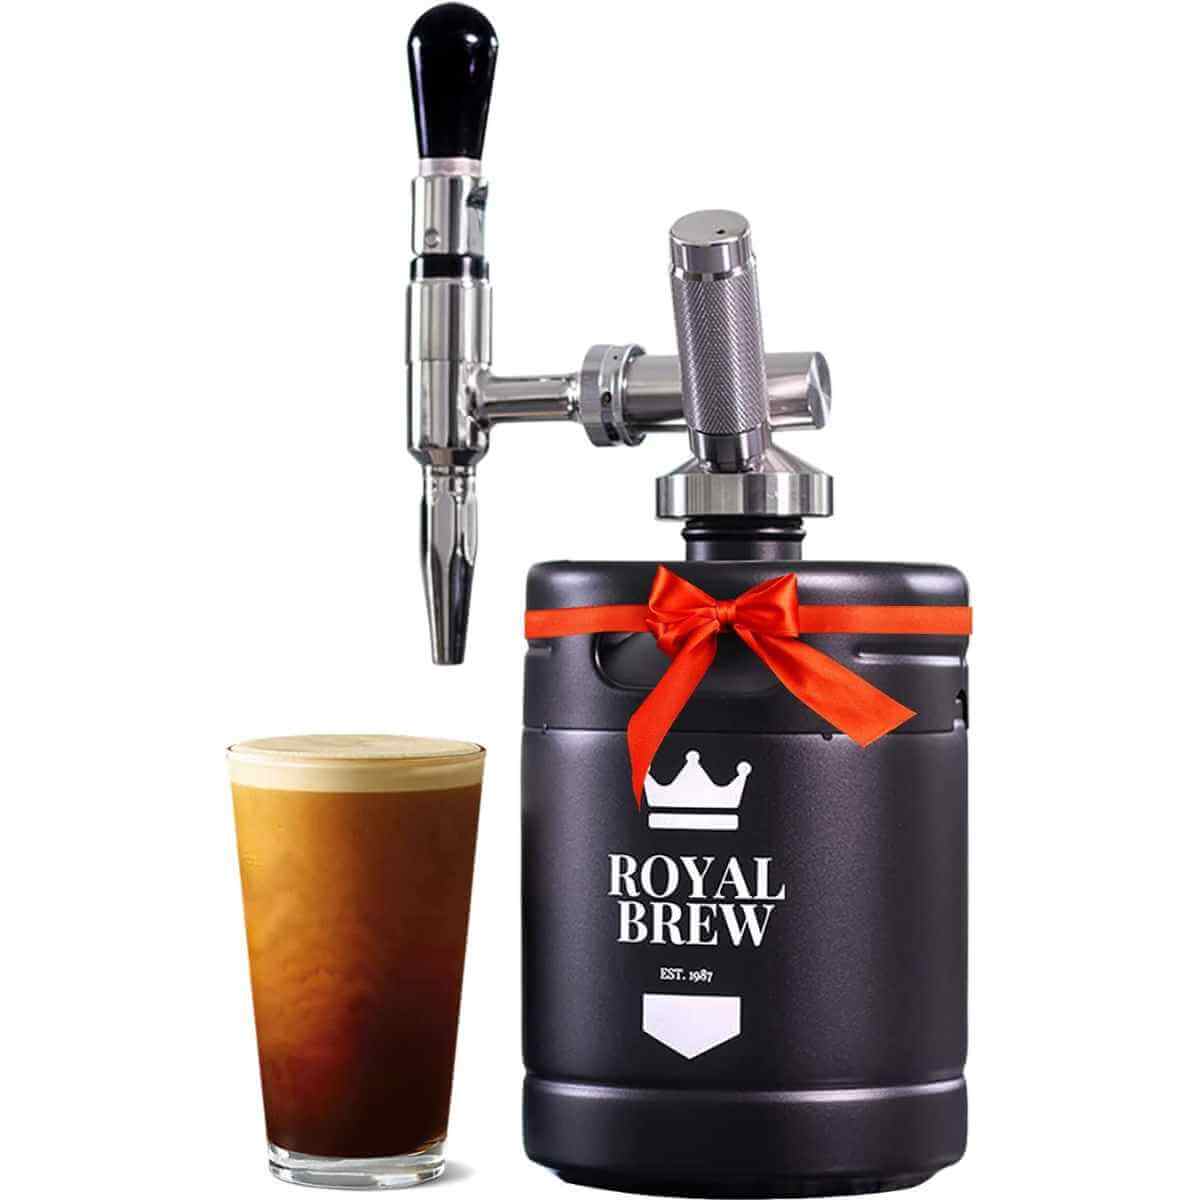 Royal Brew Nitro Cold Brew Keg